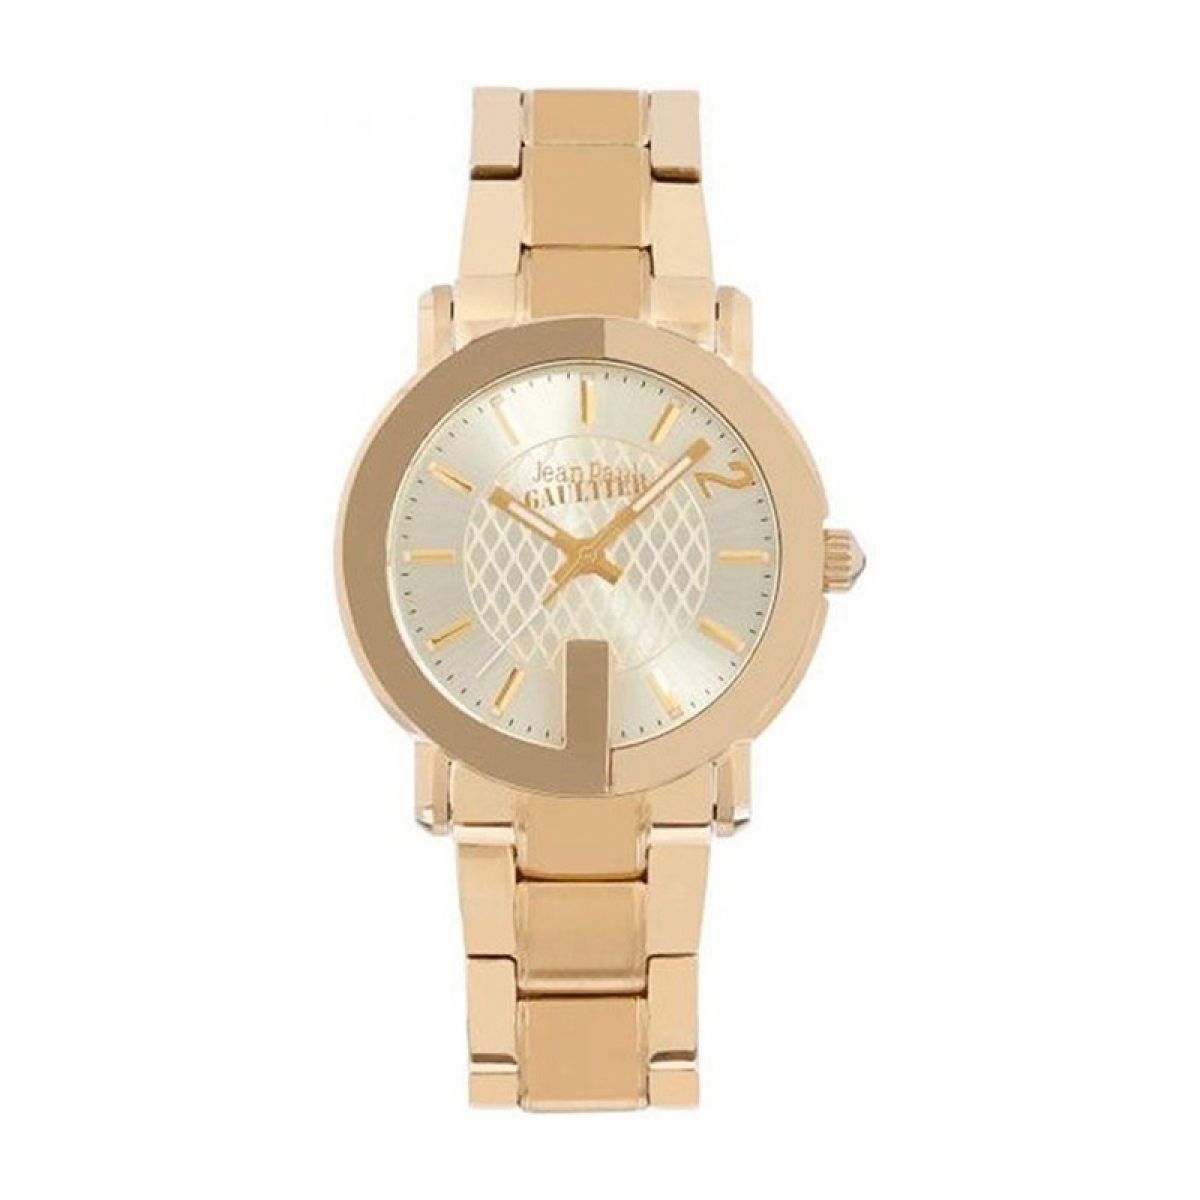 Jean Paul Gaultier 8502302 Horloge Dames 37mm